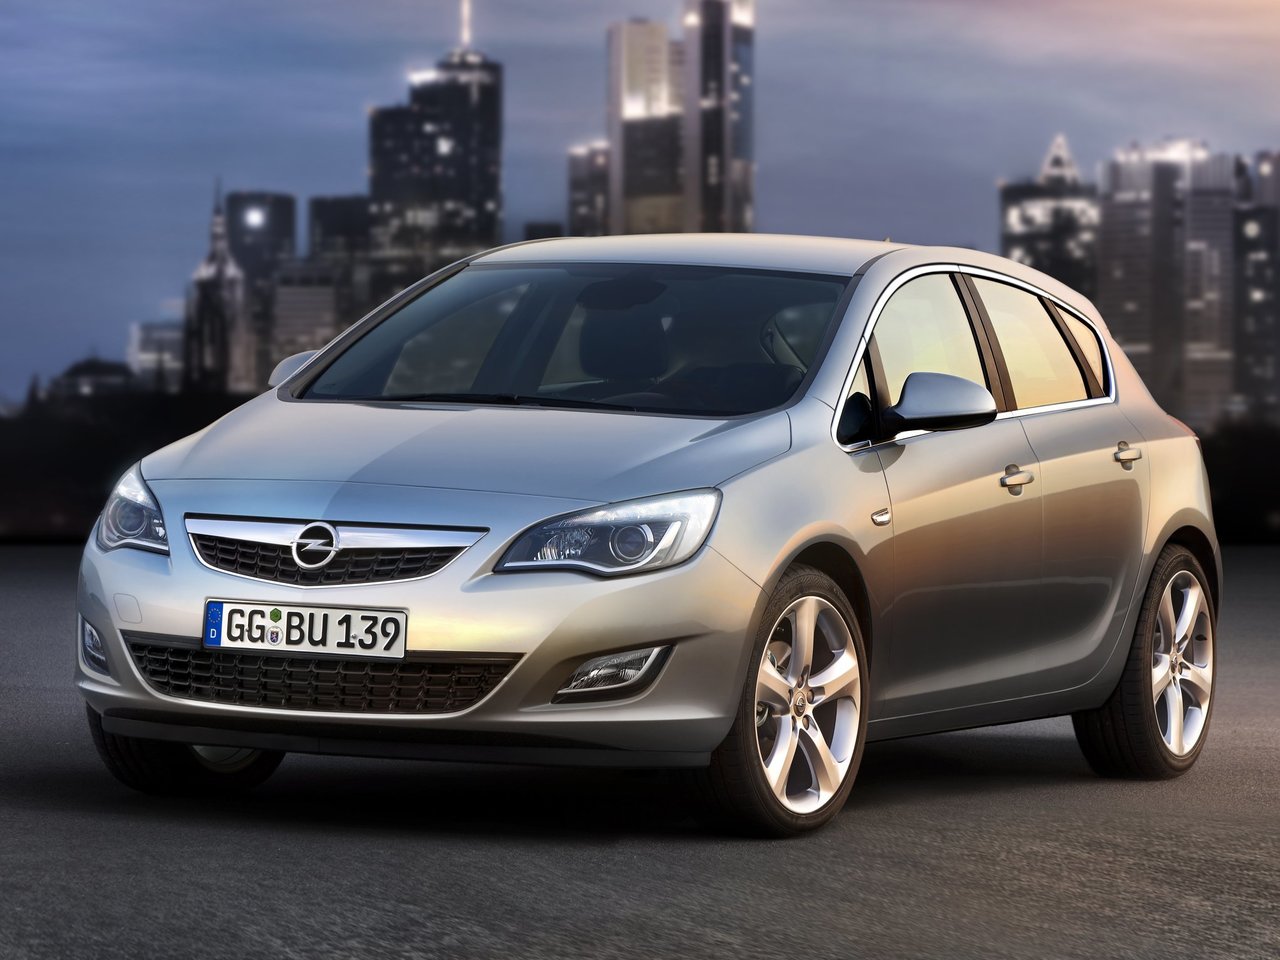 Снижаем расход Opel Astra на топливо, устанавливаем ГБО